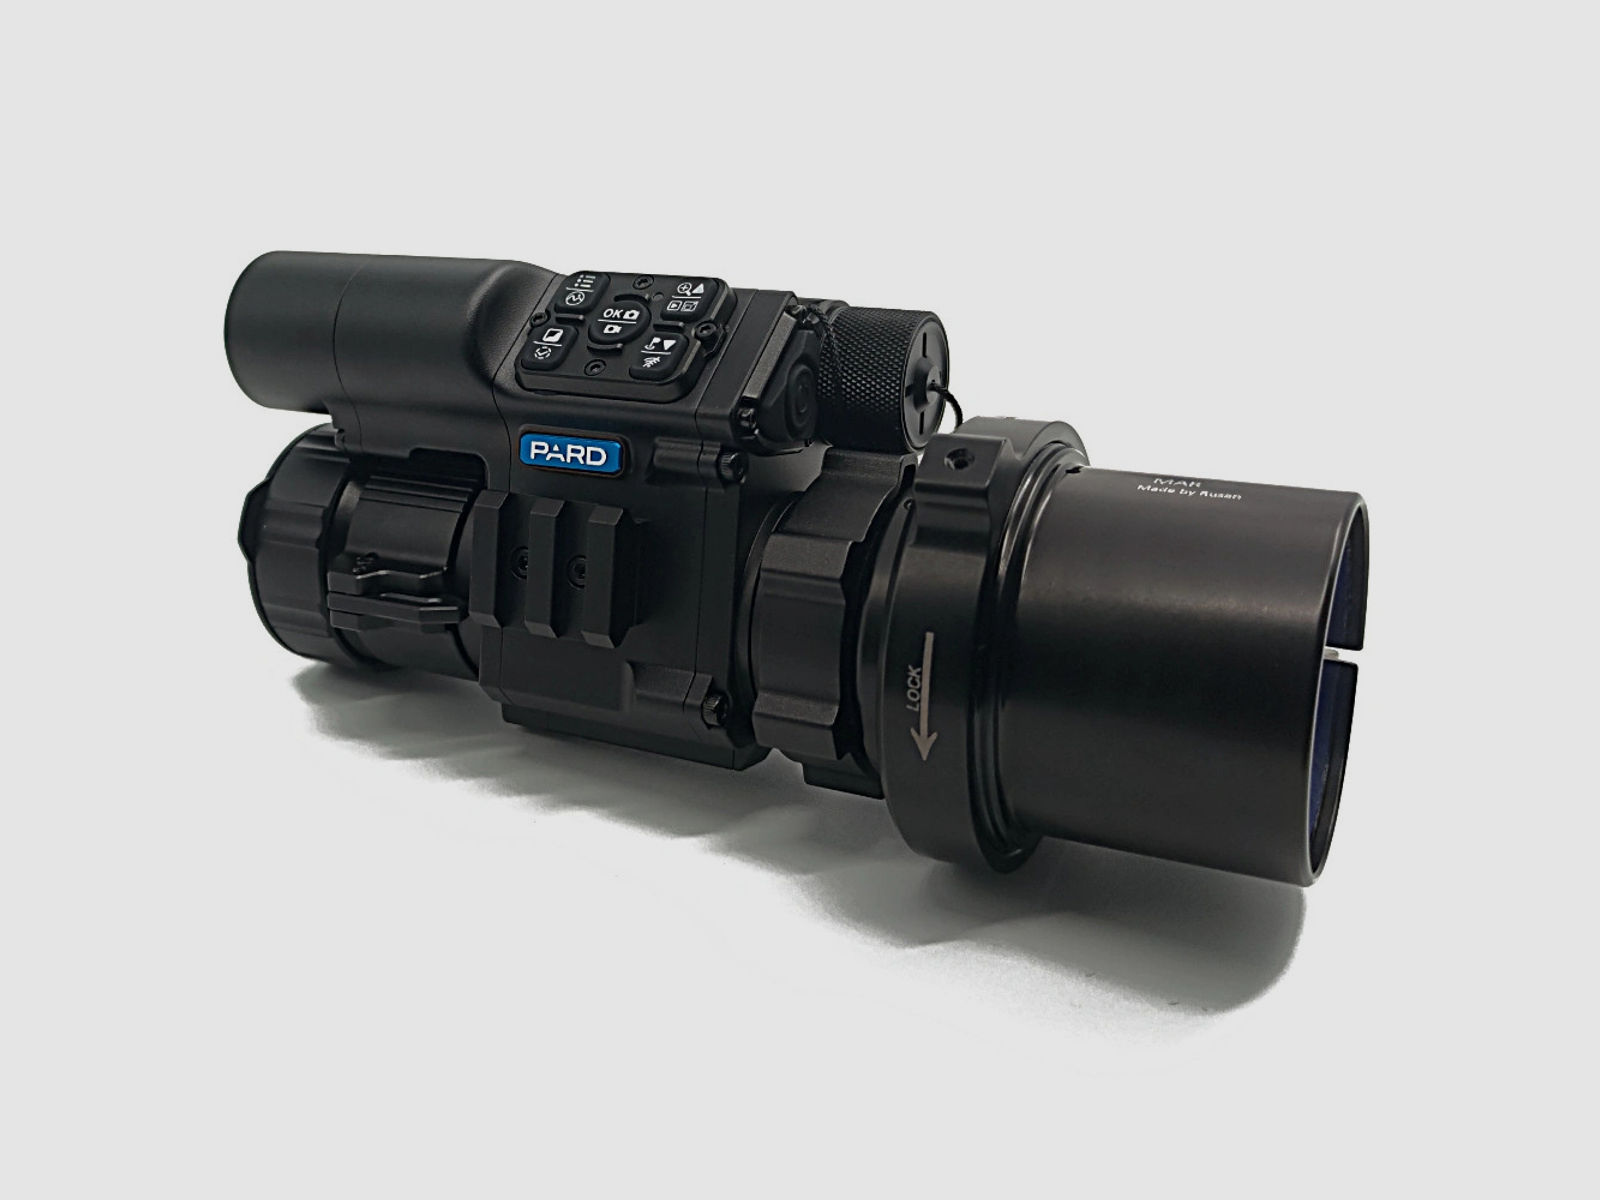 PARD FD1 Nachtsicht 3 in 1 Vorsatz, Monokular & Zielfernrohr - 940 nm mit LRF 58 mm RUSAN MAR + RUSAN MCR